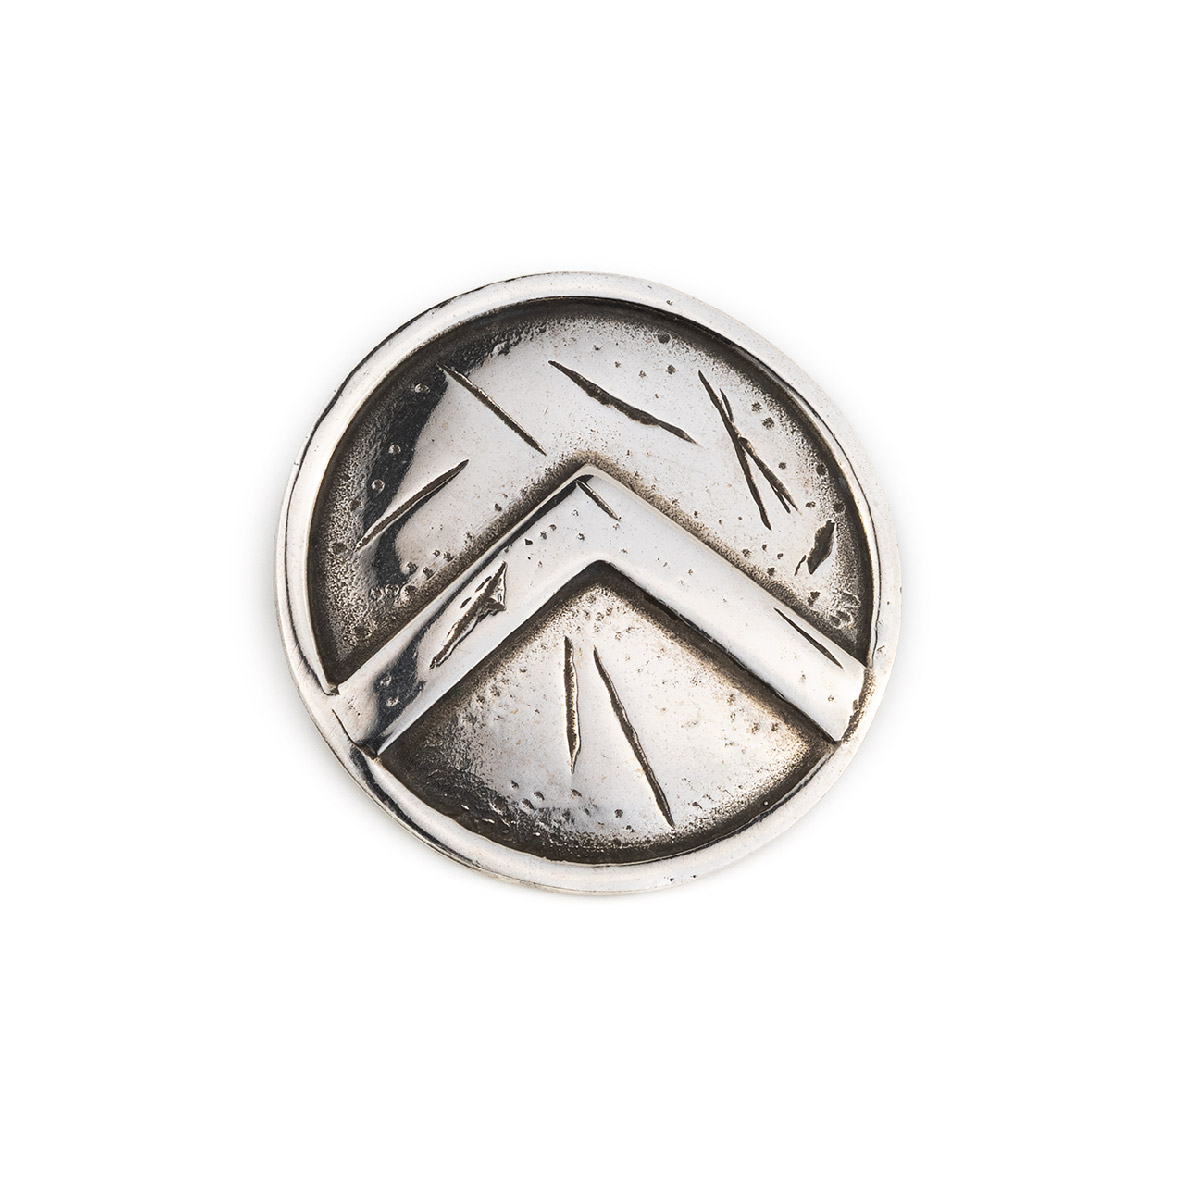 Spartan Shield Necklace Unisex Spartan Necklace Spartan 